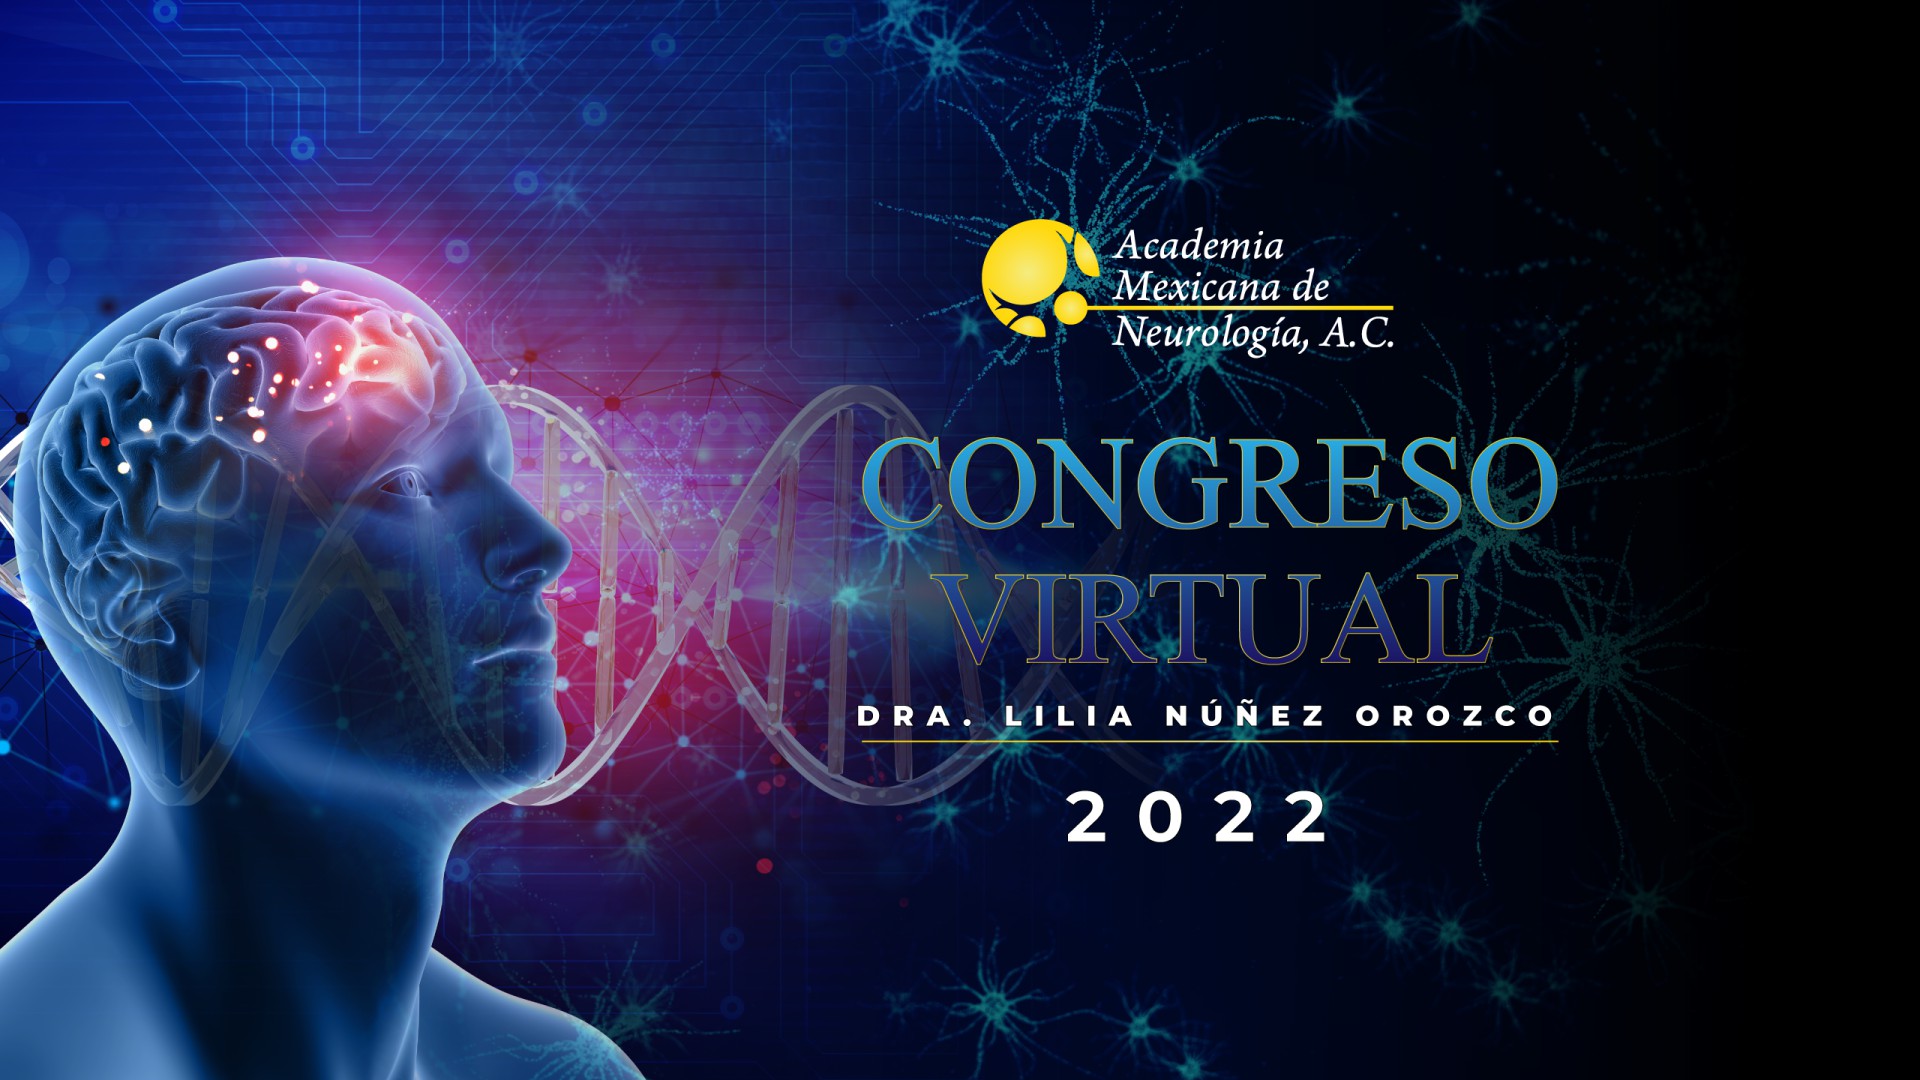 Congreso Virtual de Neurología 2022 "Dra. Lilia Núñez Orozco"